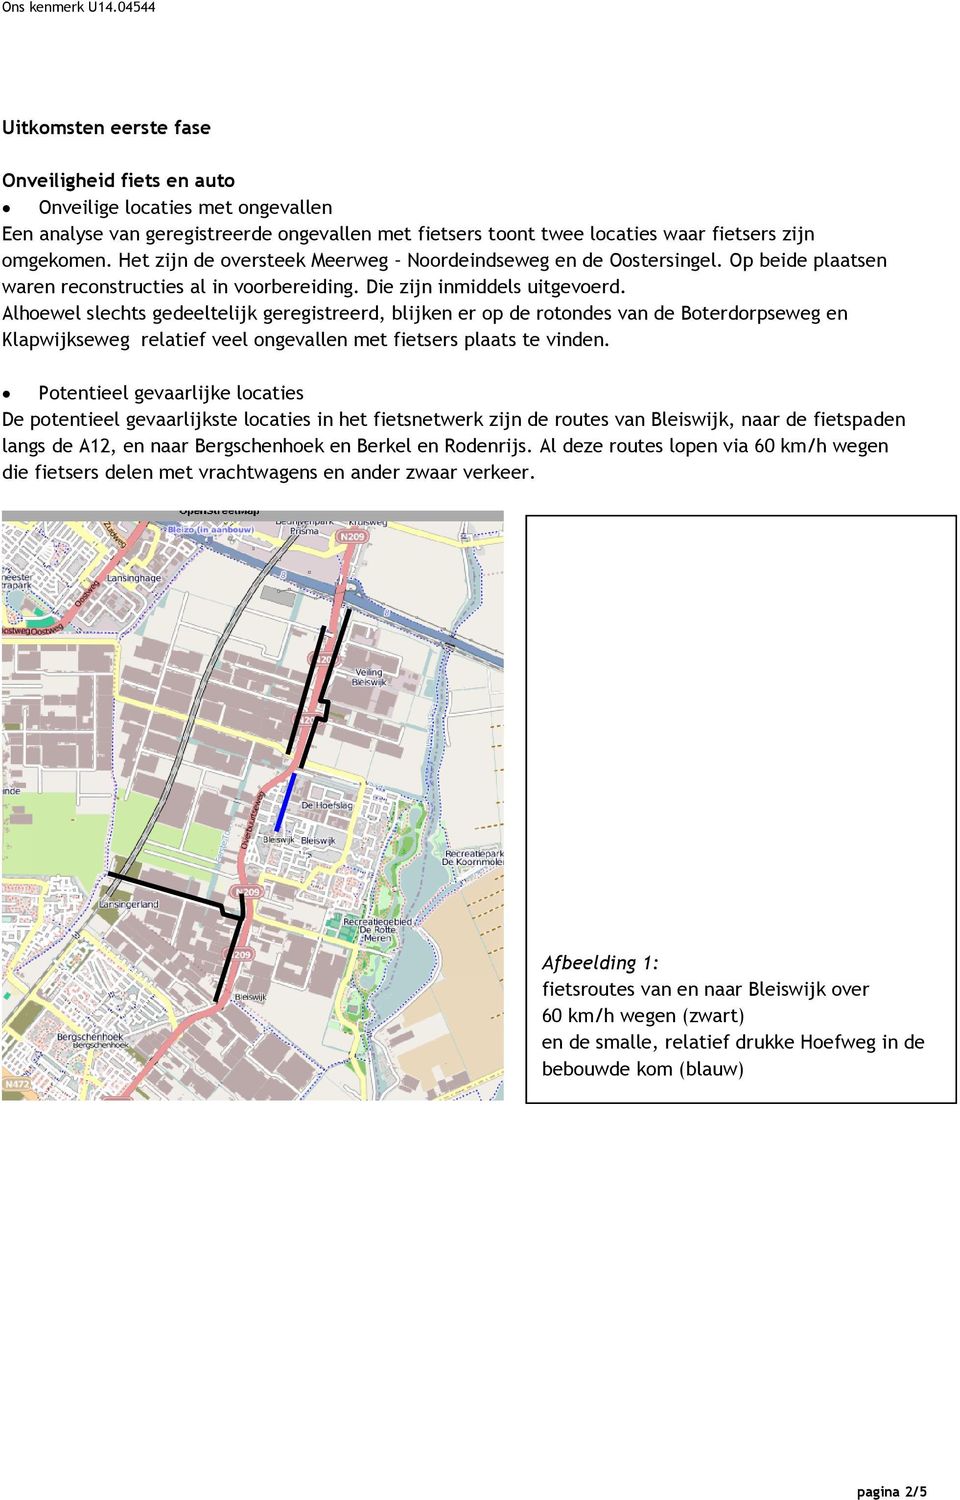 Alhoewel slechts gedeeltelijk geregistreerd, blijken er op de rotondes van de Boterdorpseweg en Klapwijkseweg relatief veel ongevallen met fietsers plaats te vinden.